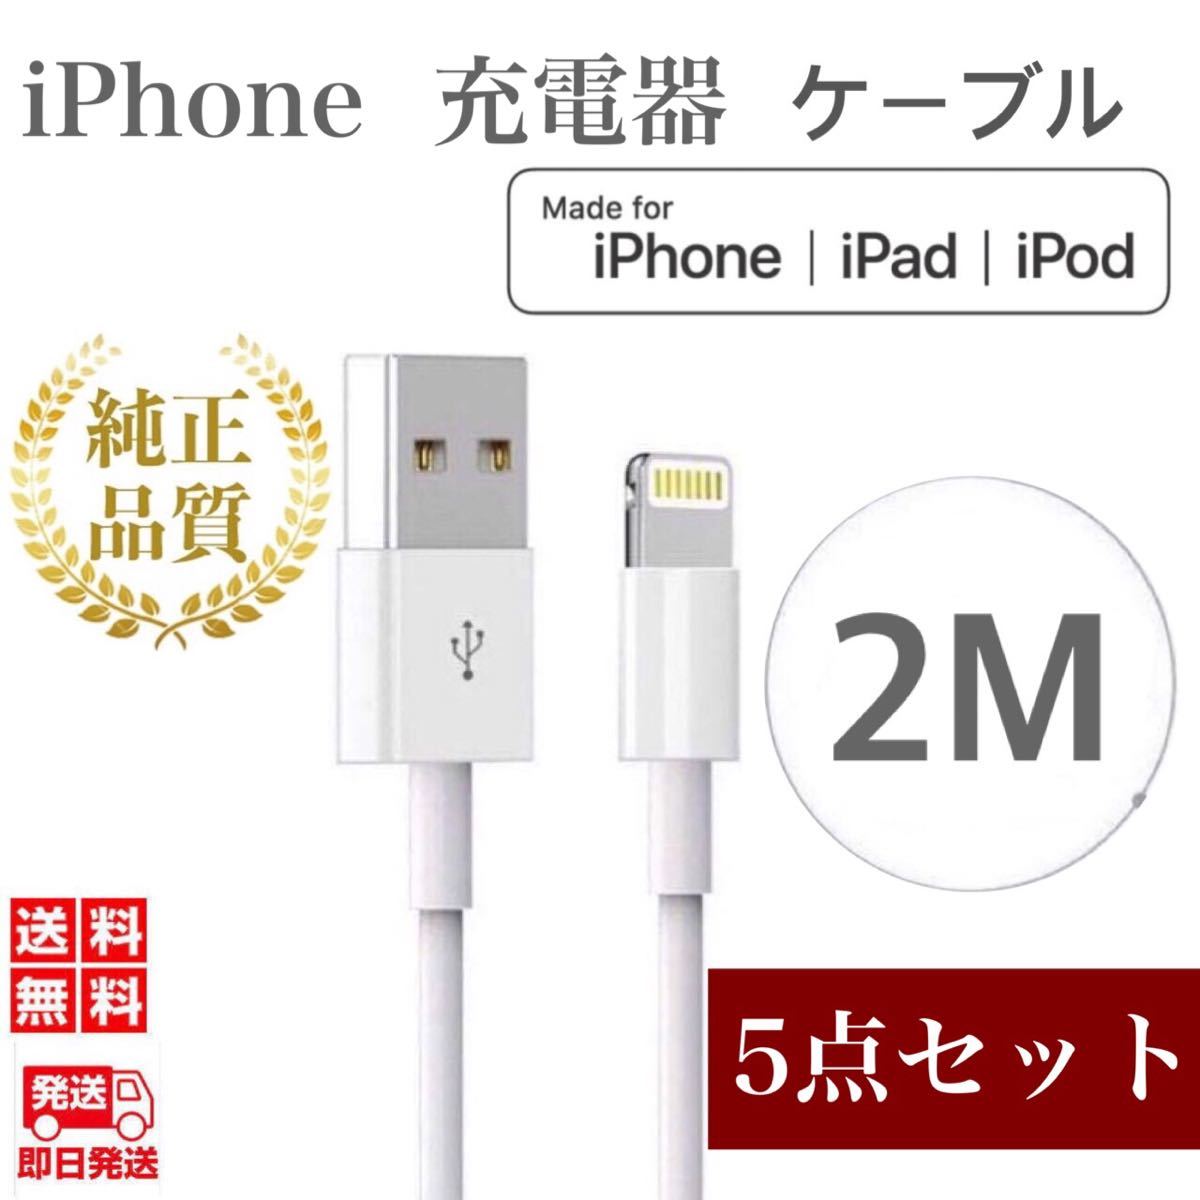 期間限定特価品 iPhone ライトニングケーブル 3本 新品 USB 充電器 純正品質